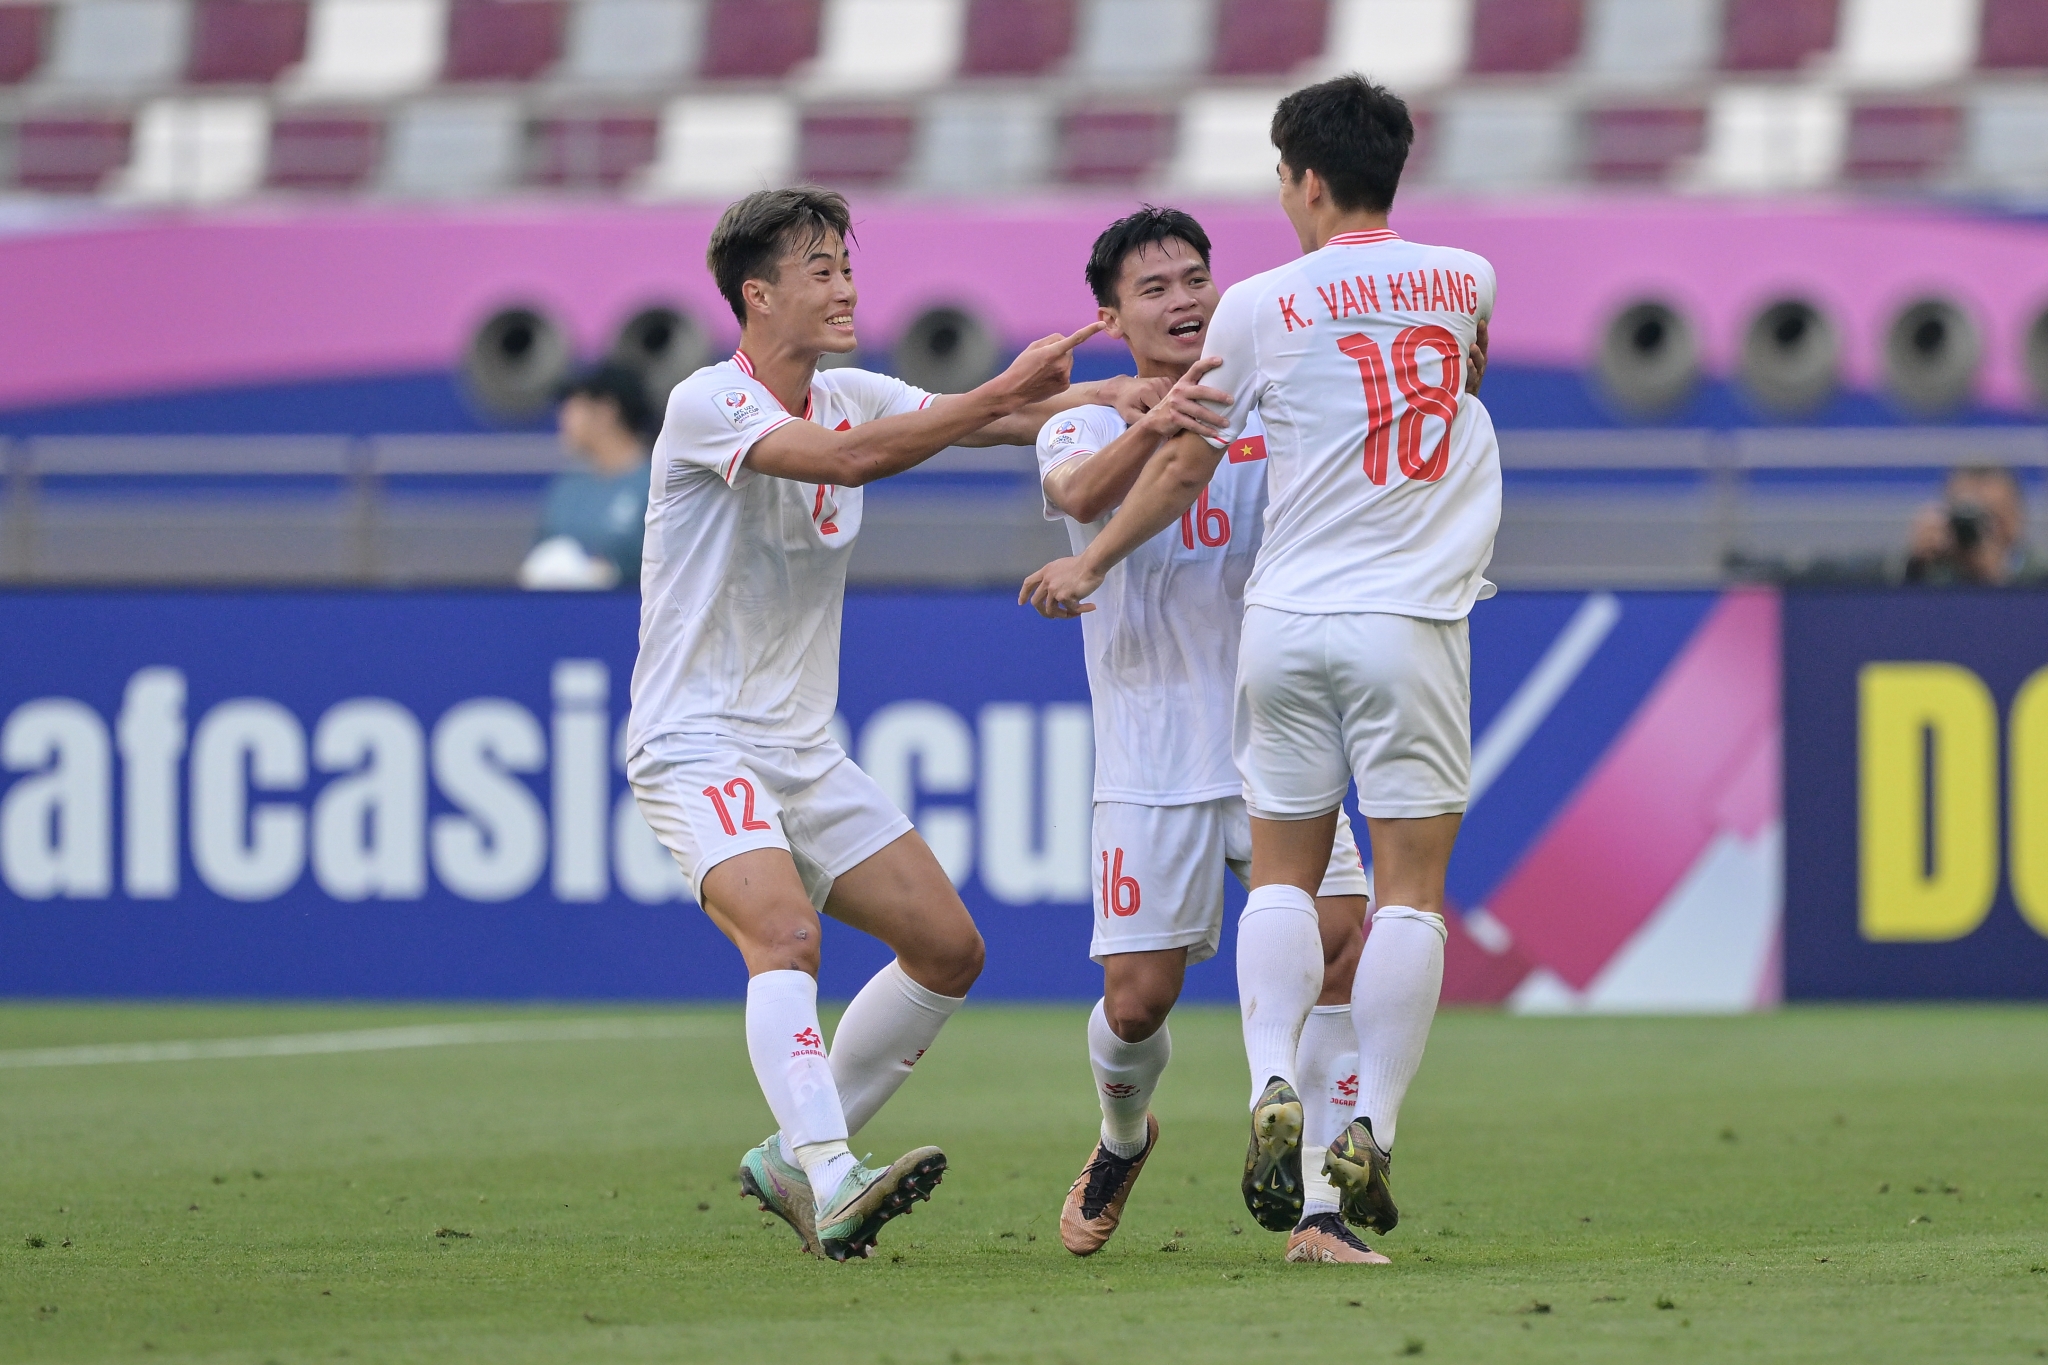 ĐT U23 Việt Nam tập sút penalty, Khuất Văn Khang nói về “cầu vồng giữa sa mạc” 1